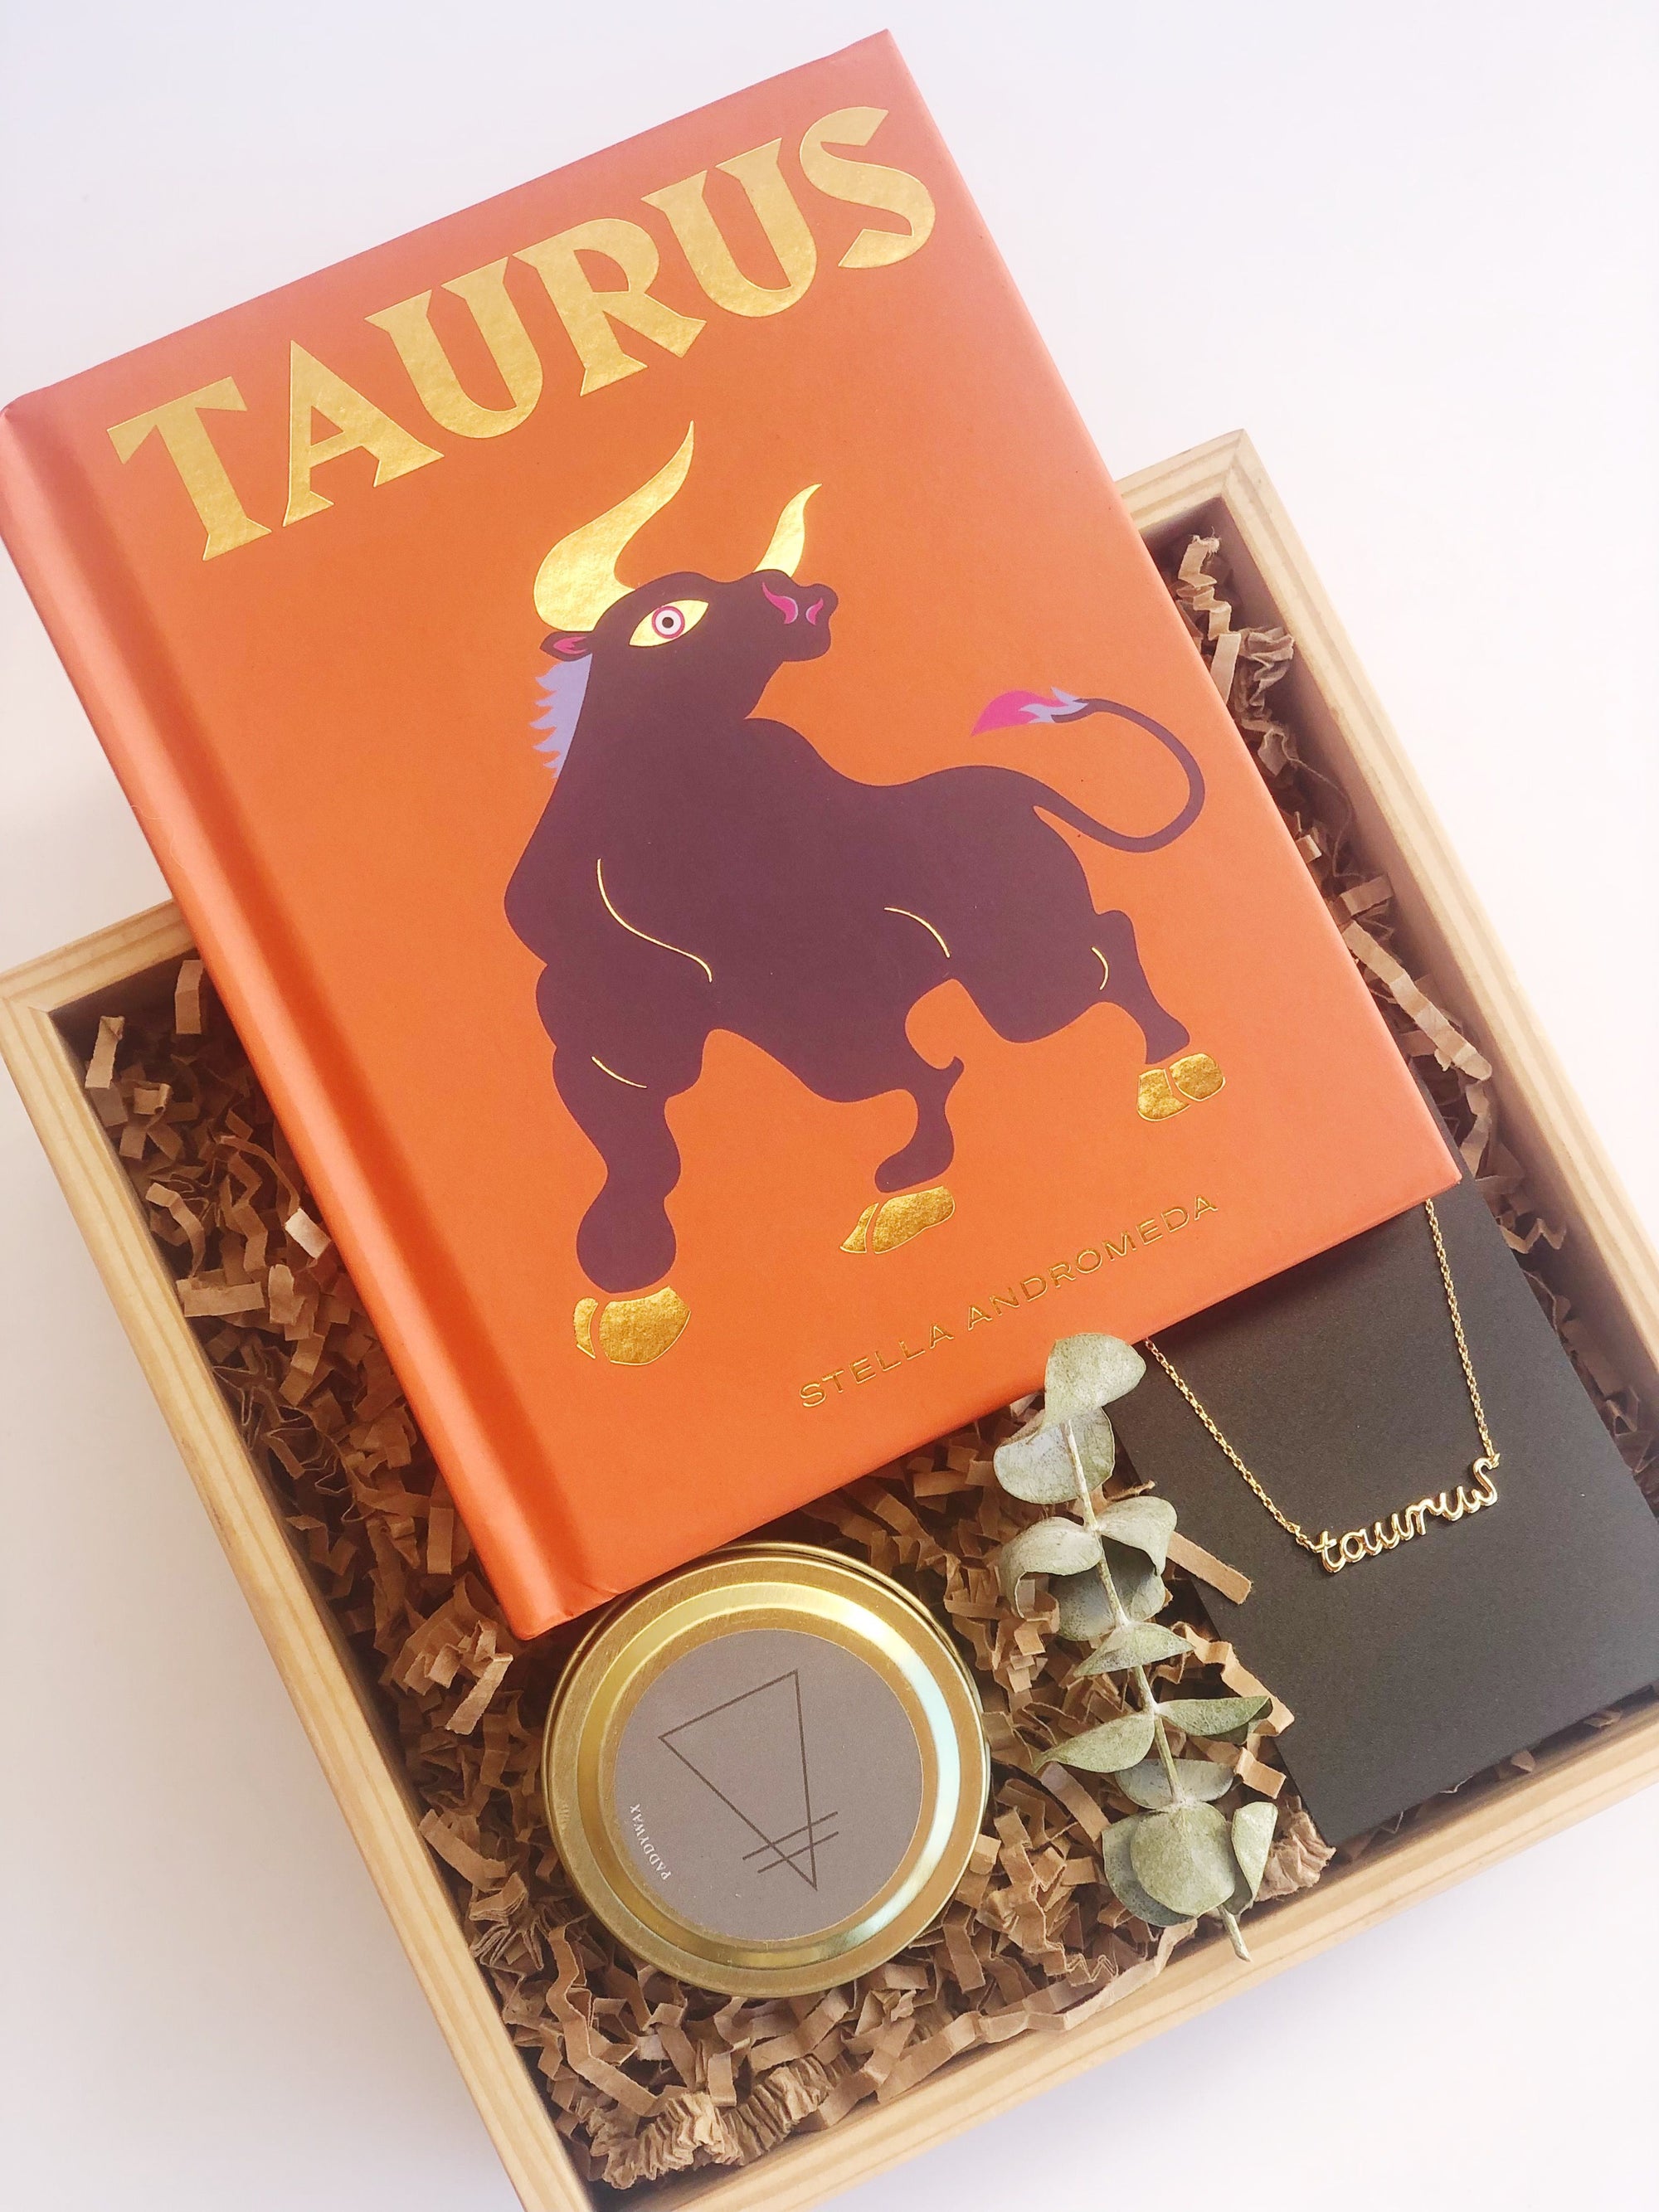 The Taurus Zodiac Box